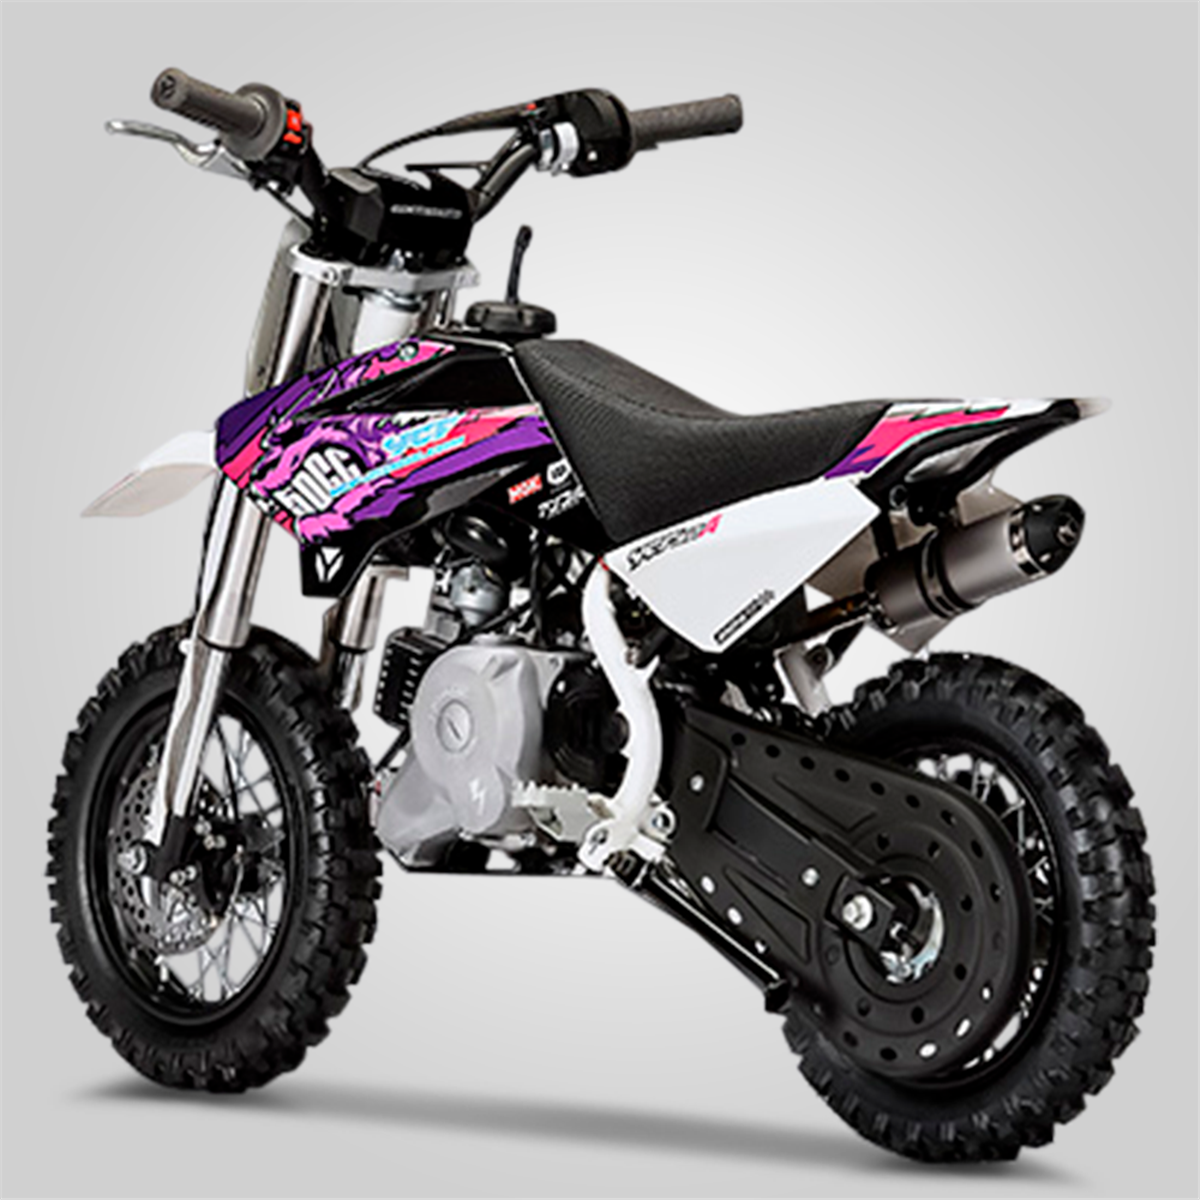 Moto pour enfant, Dirt bike / Pit bike YCF 50A - Small Mx ...